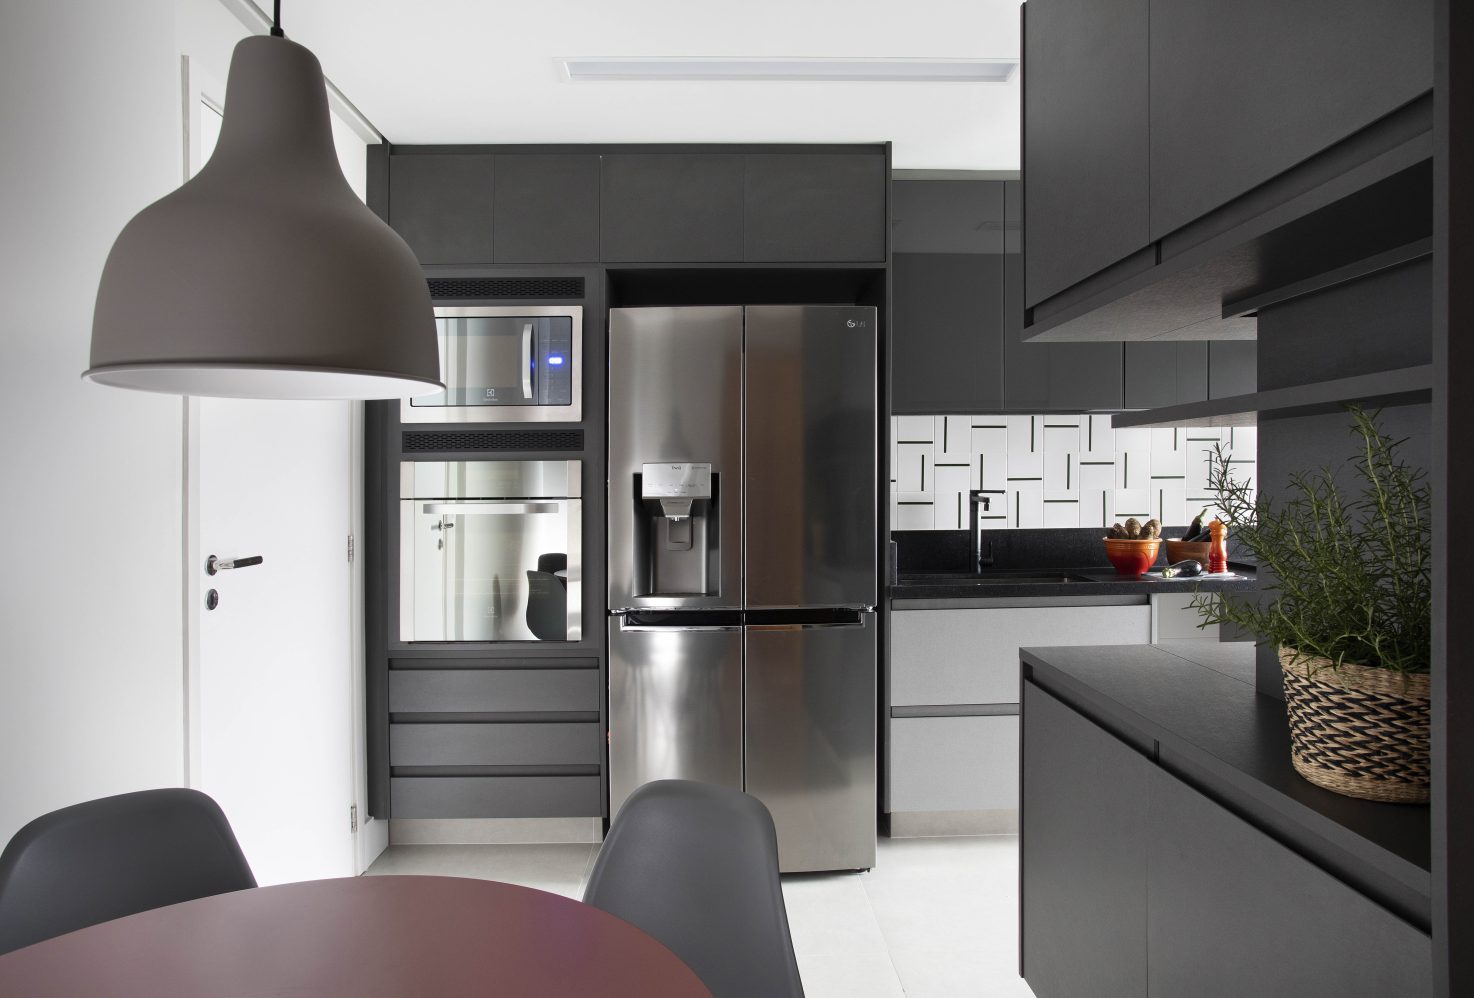 Apê de 120m² tem base neutra em contraste com cozinha preta e cinza